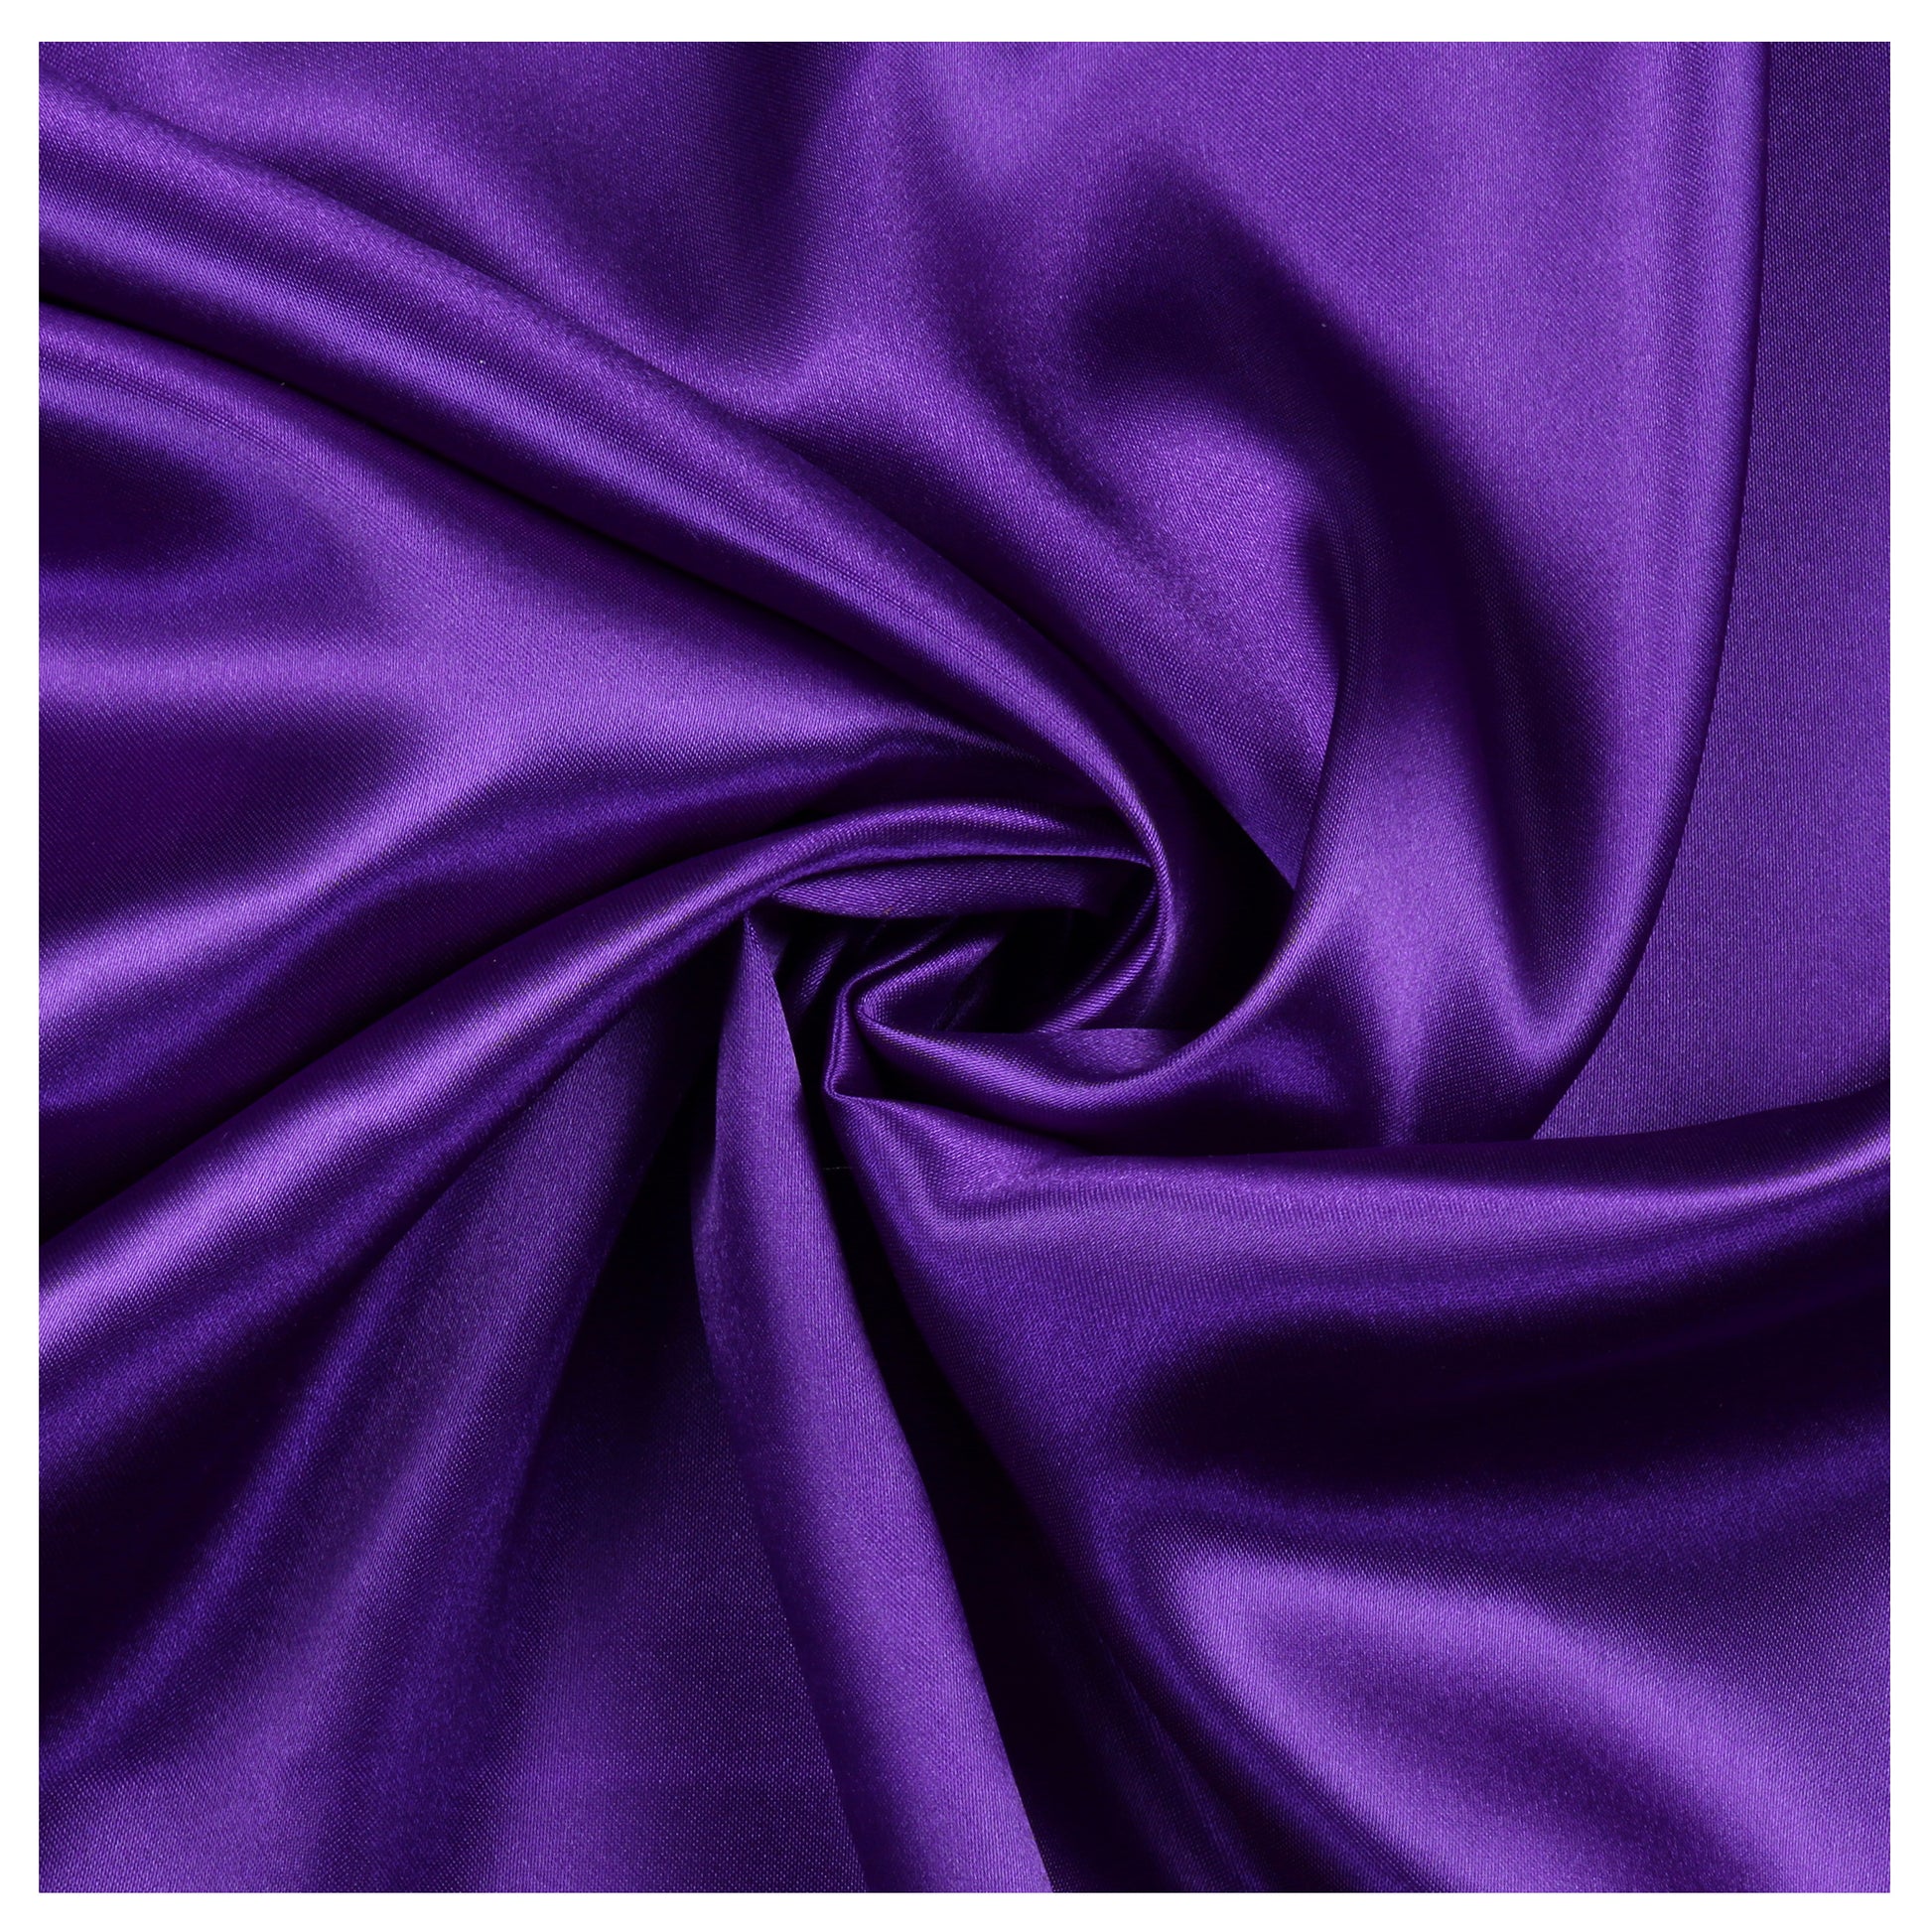 Cadbury Purple,6fb2d841-126a-430c-9843-b4e8e455d5ab